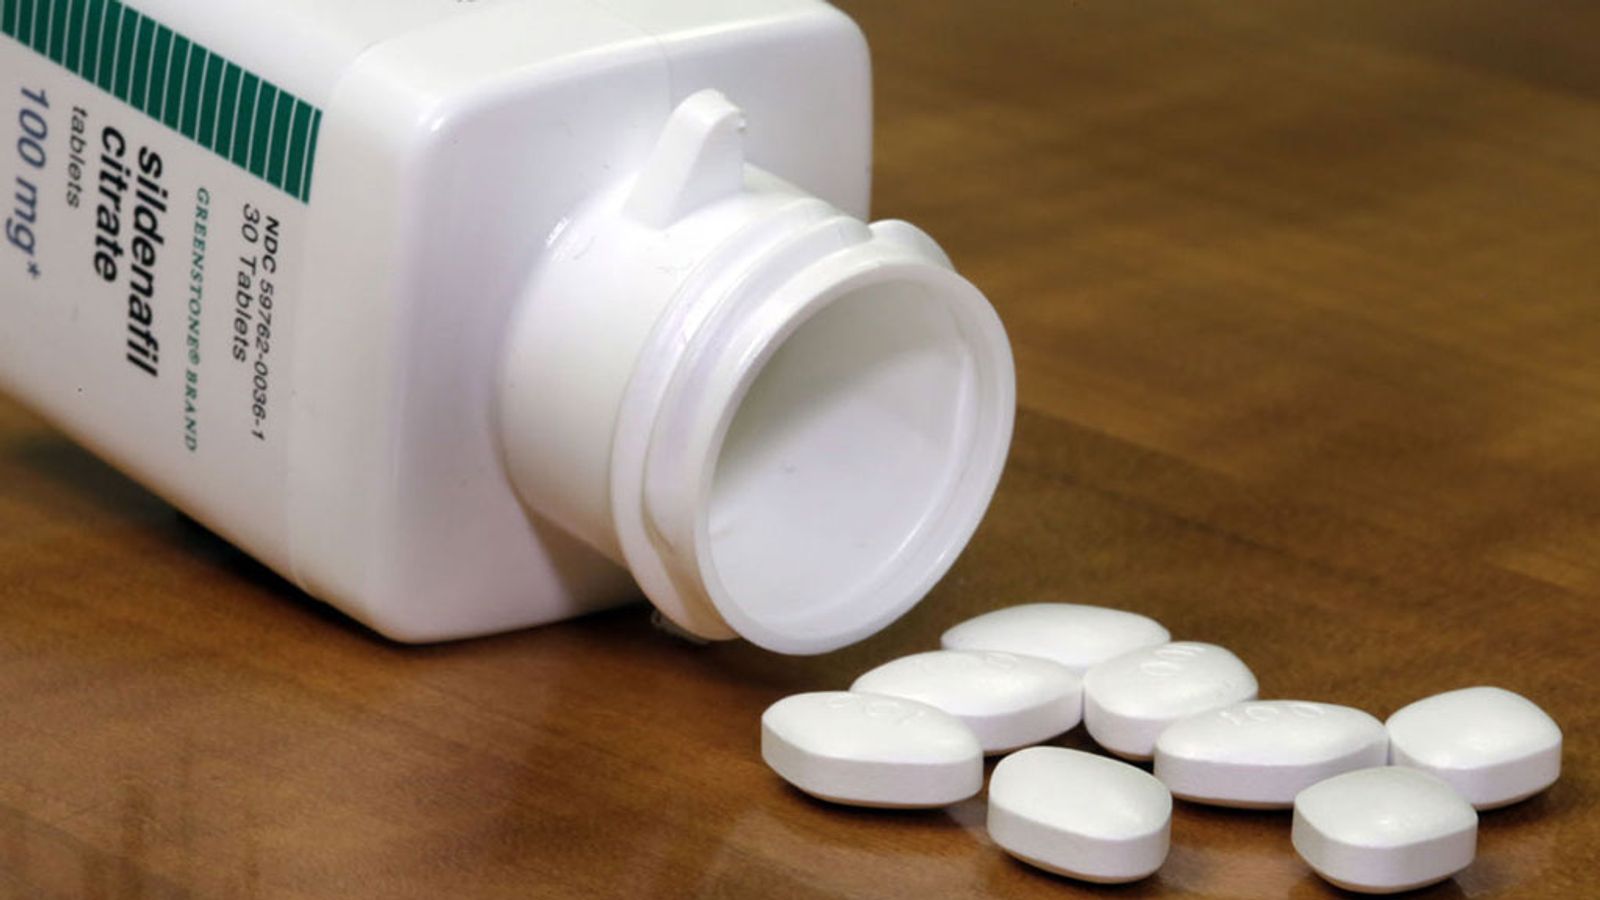 Legal, Half-Price Viagra Goes On Sale In U.S. Next Week